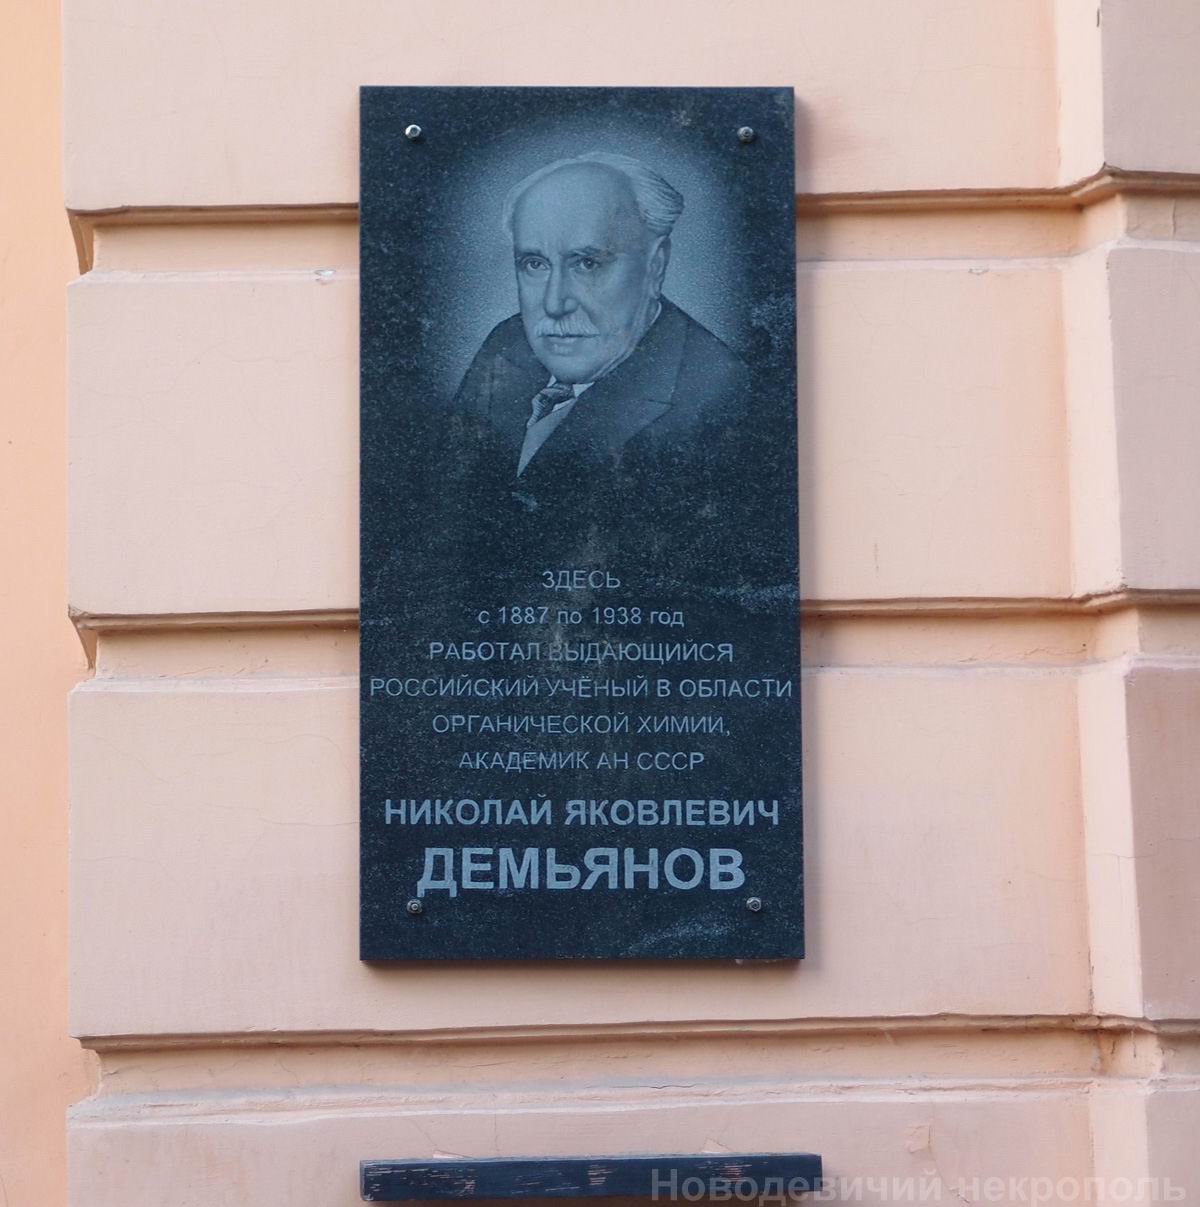 Мемориальная доска Демьянову Н.Я. (1861-1938), в Тимирязевском проезде, дом 2, открыта в 2007.